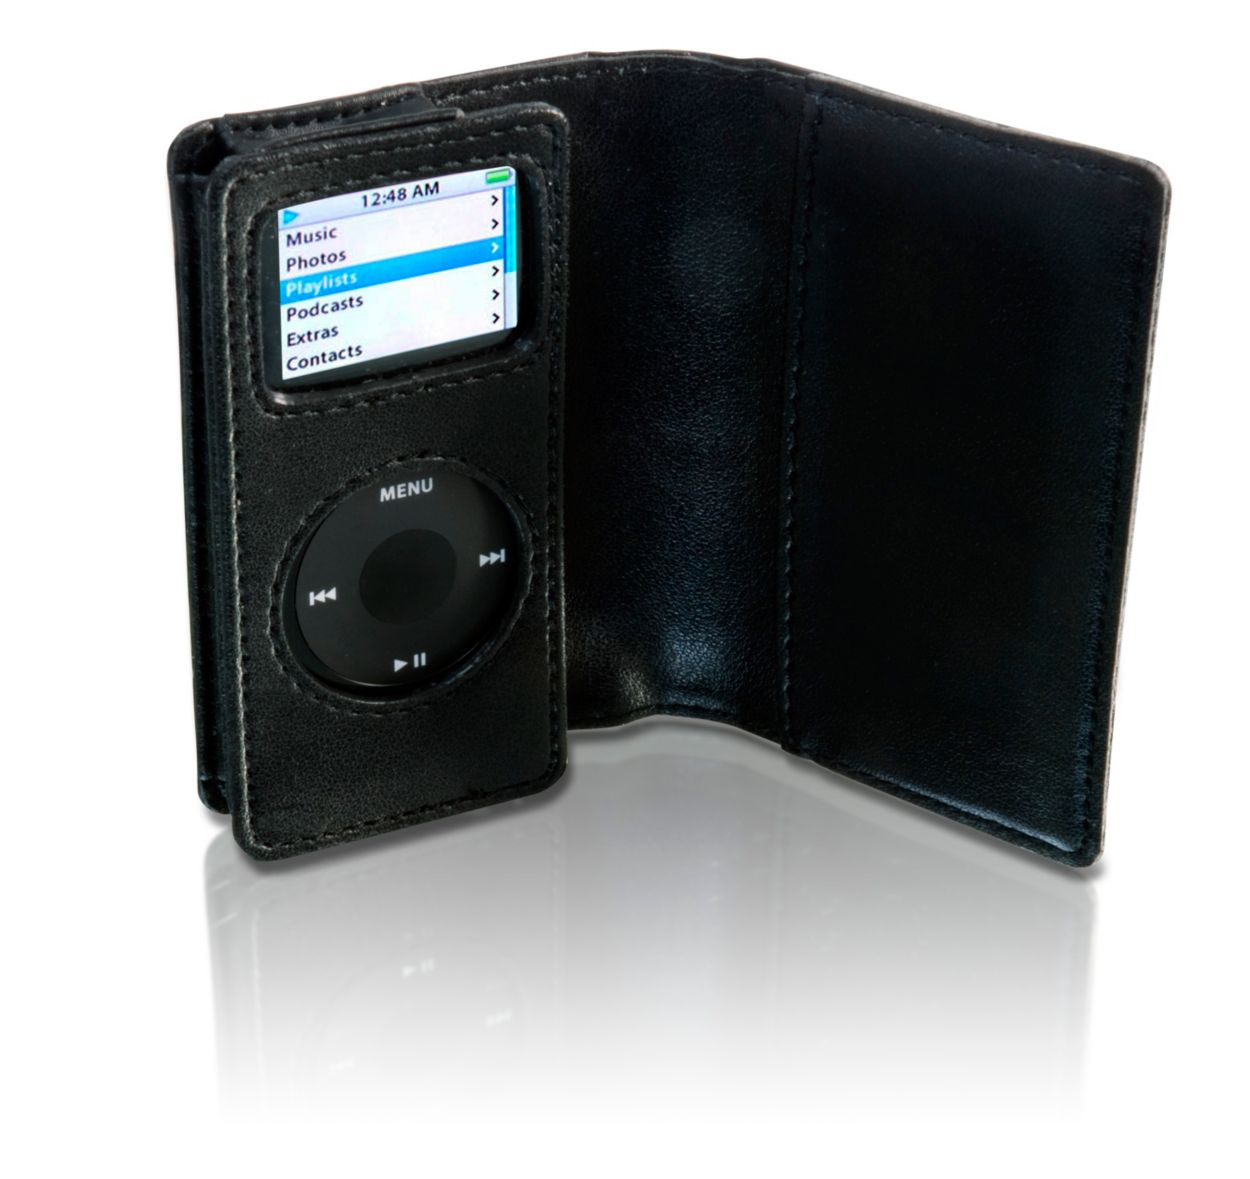 Proteggi il tuo iPod Nano con stile